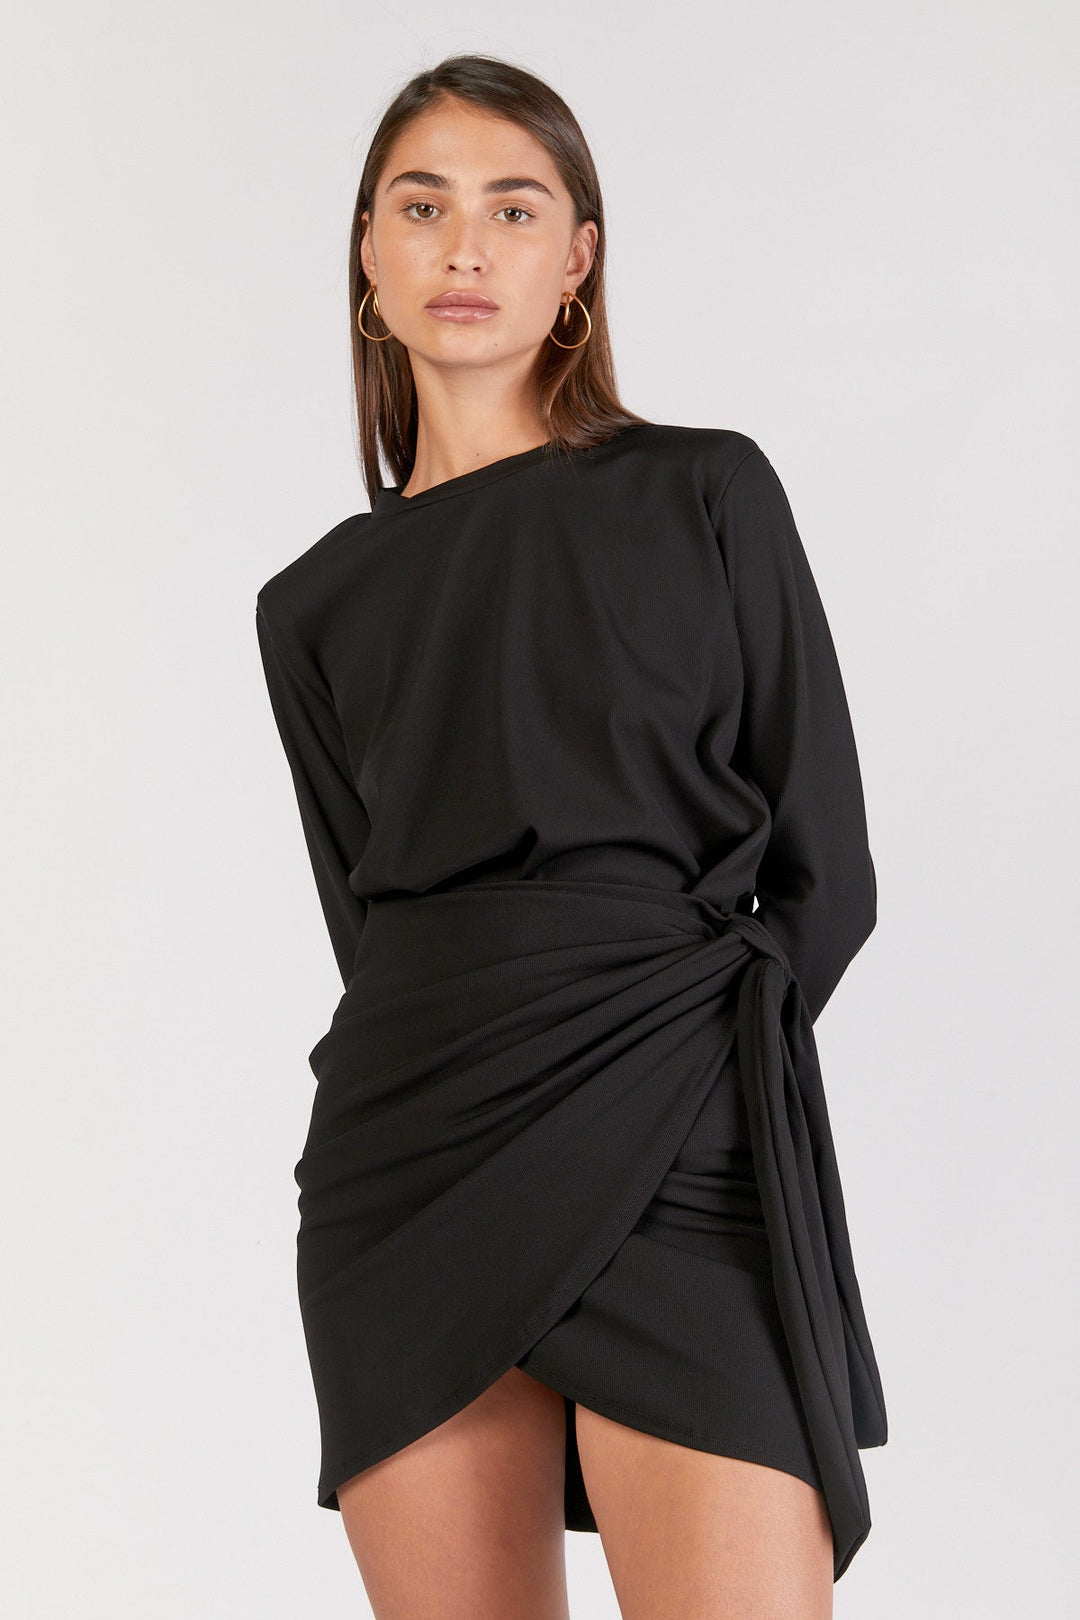 חצאית אלבינה בצבע שחור - Dana Sidi